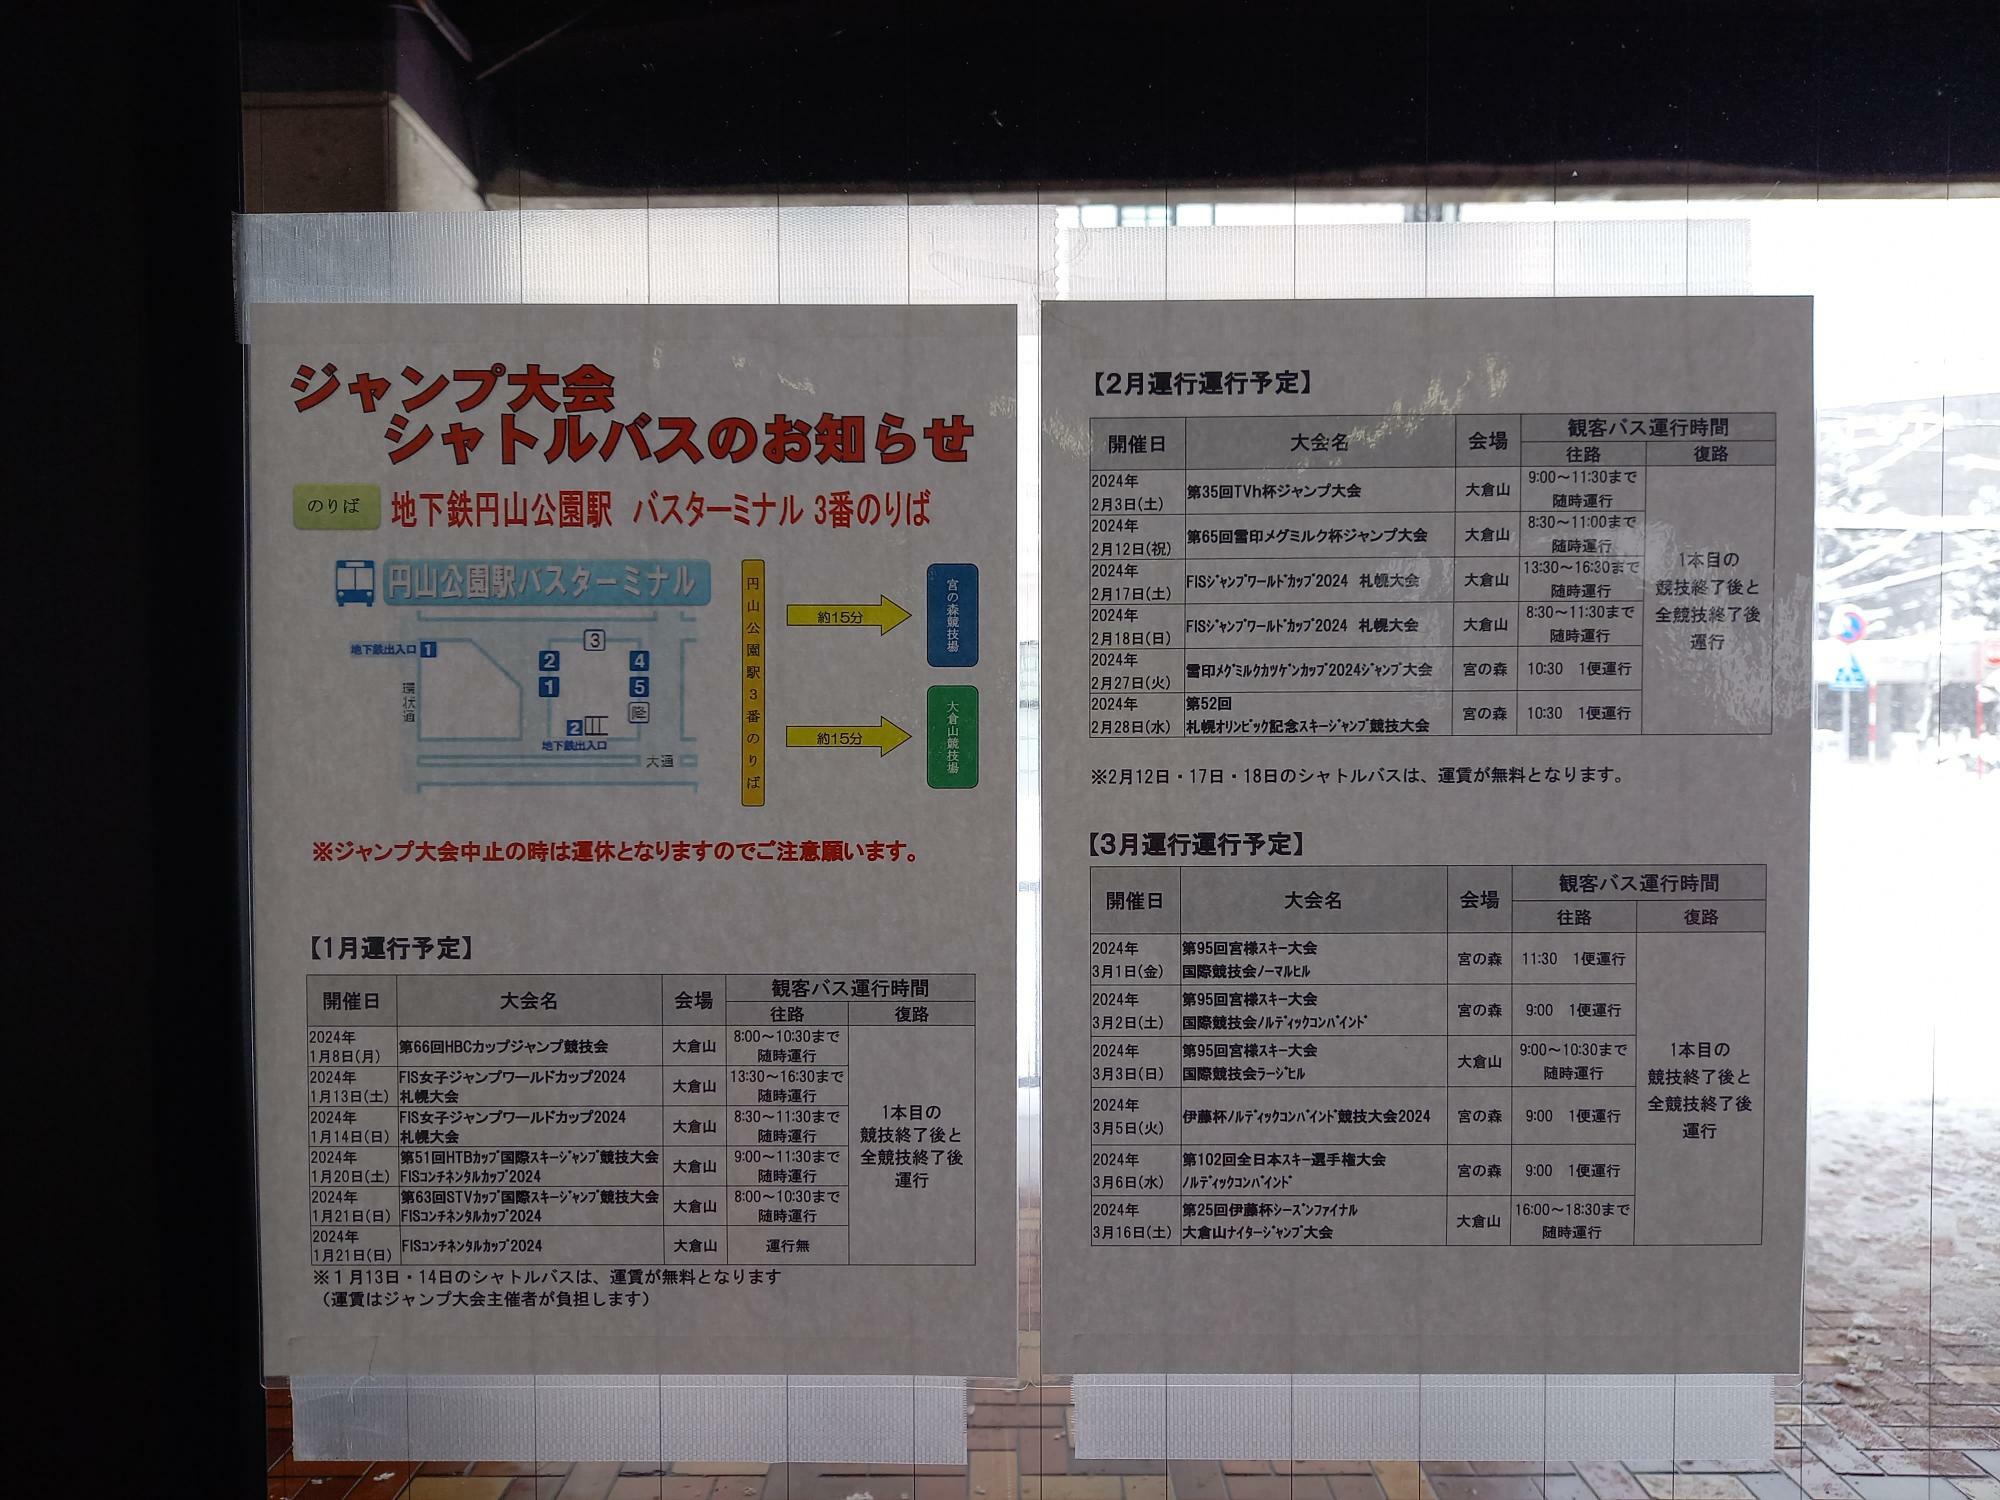 円山バスターミナルに貼られているシャトルバスのお知らせと日程表